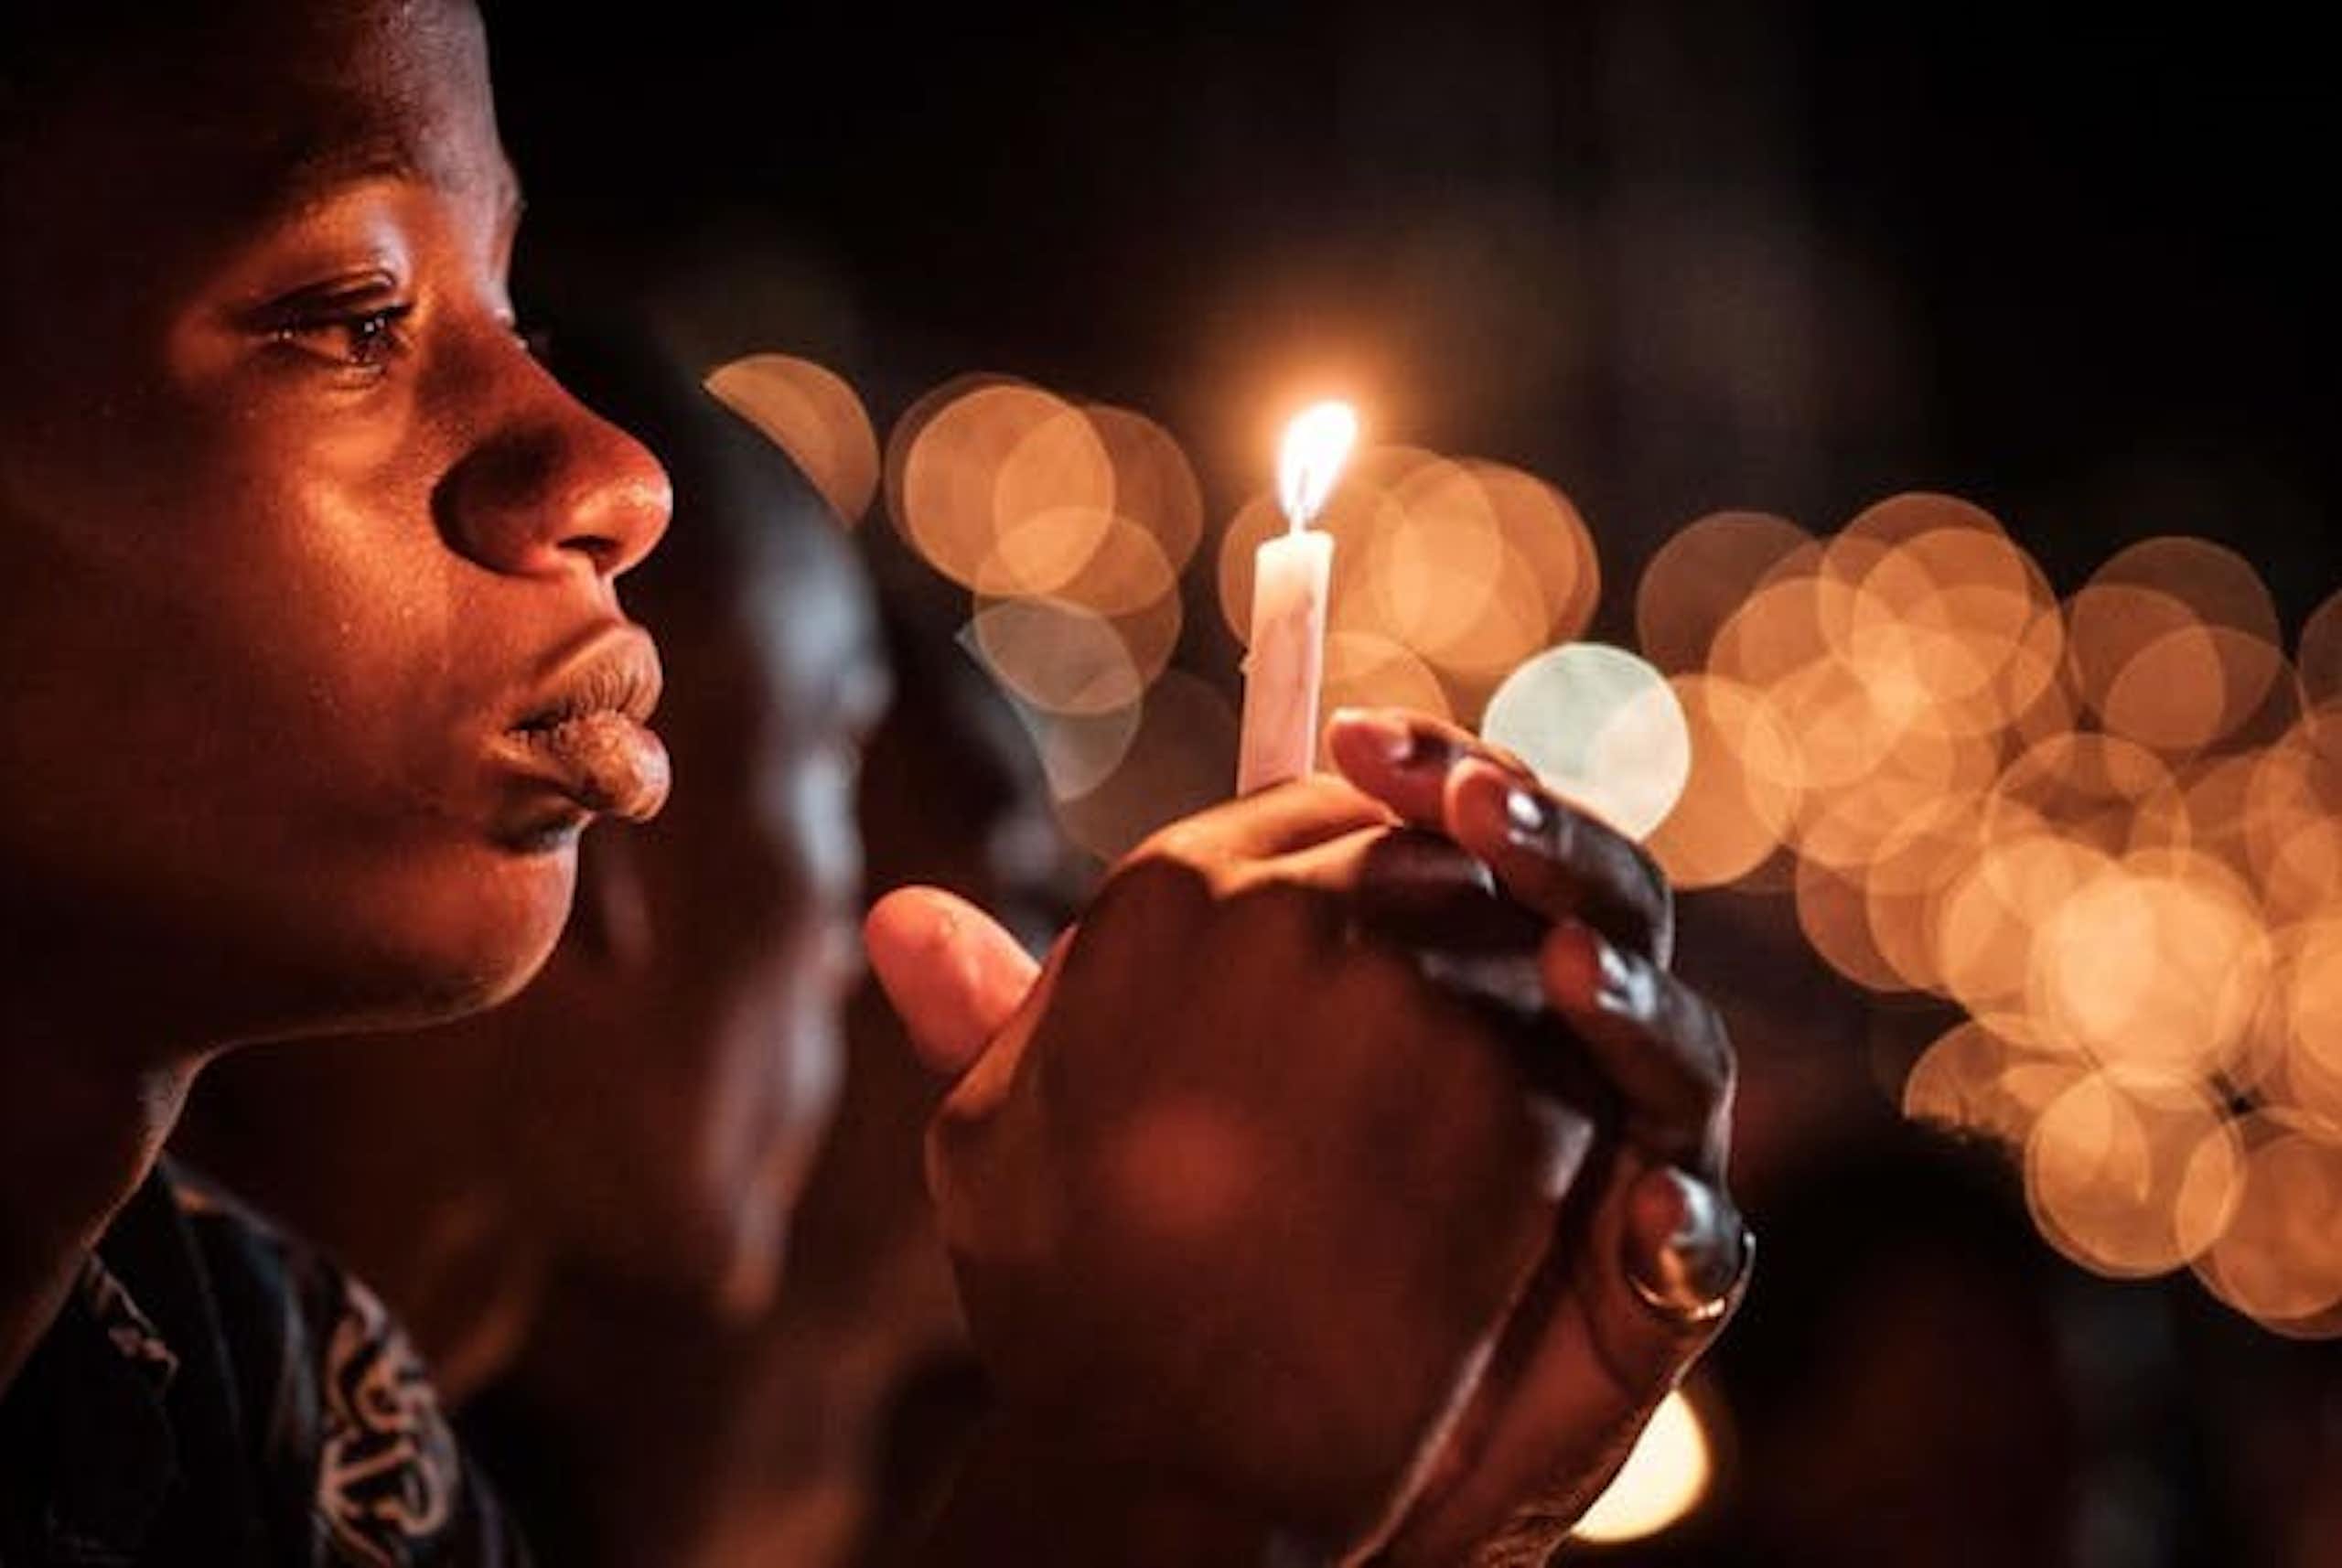 30 ans après le génocide : les générations plus âgées du Rwanda craignent un retour des tensions ethniques